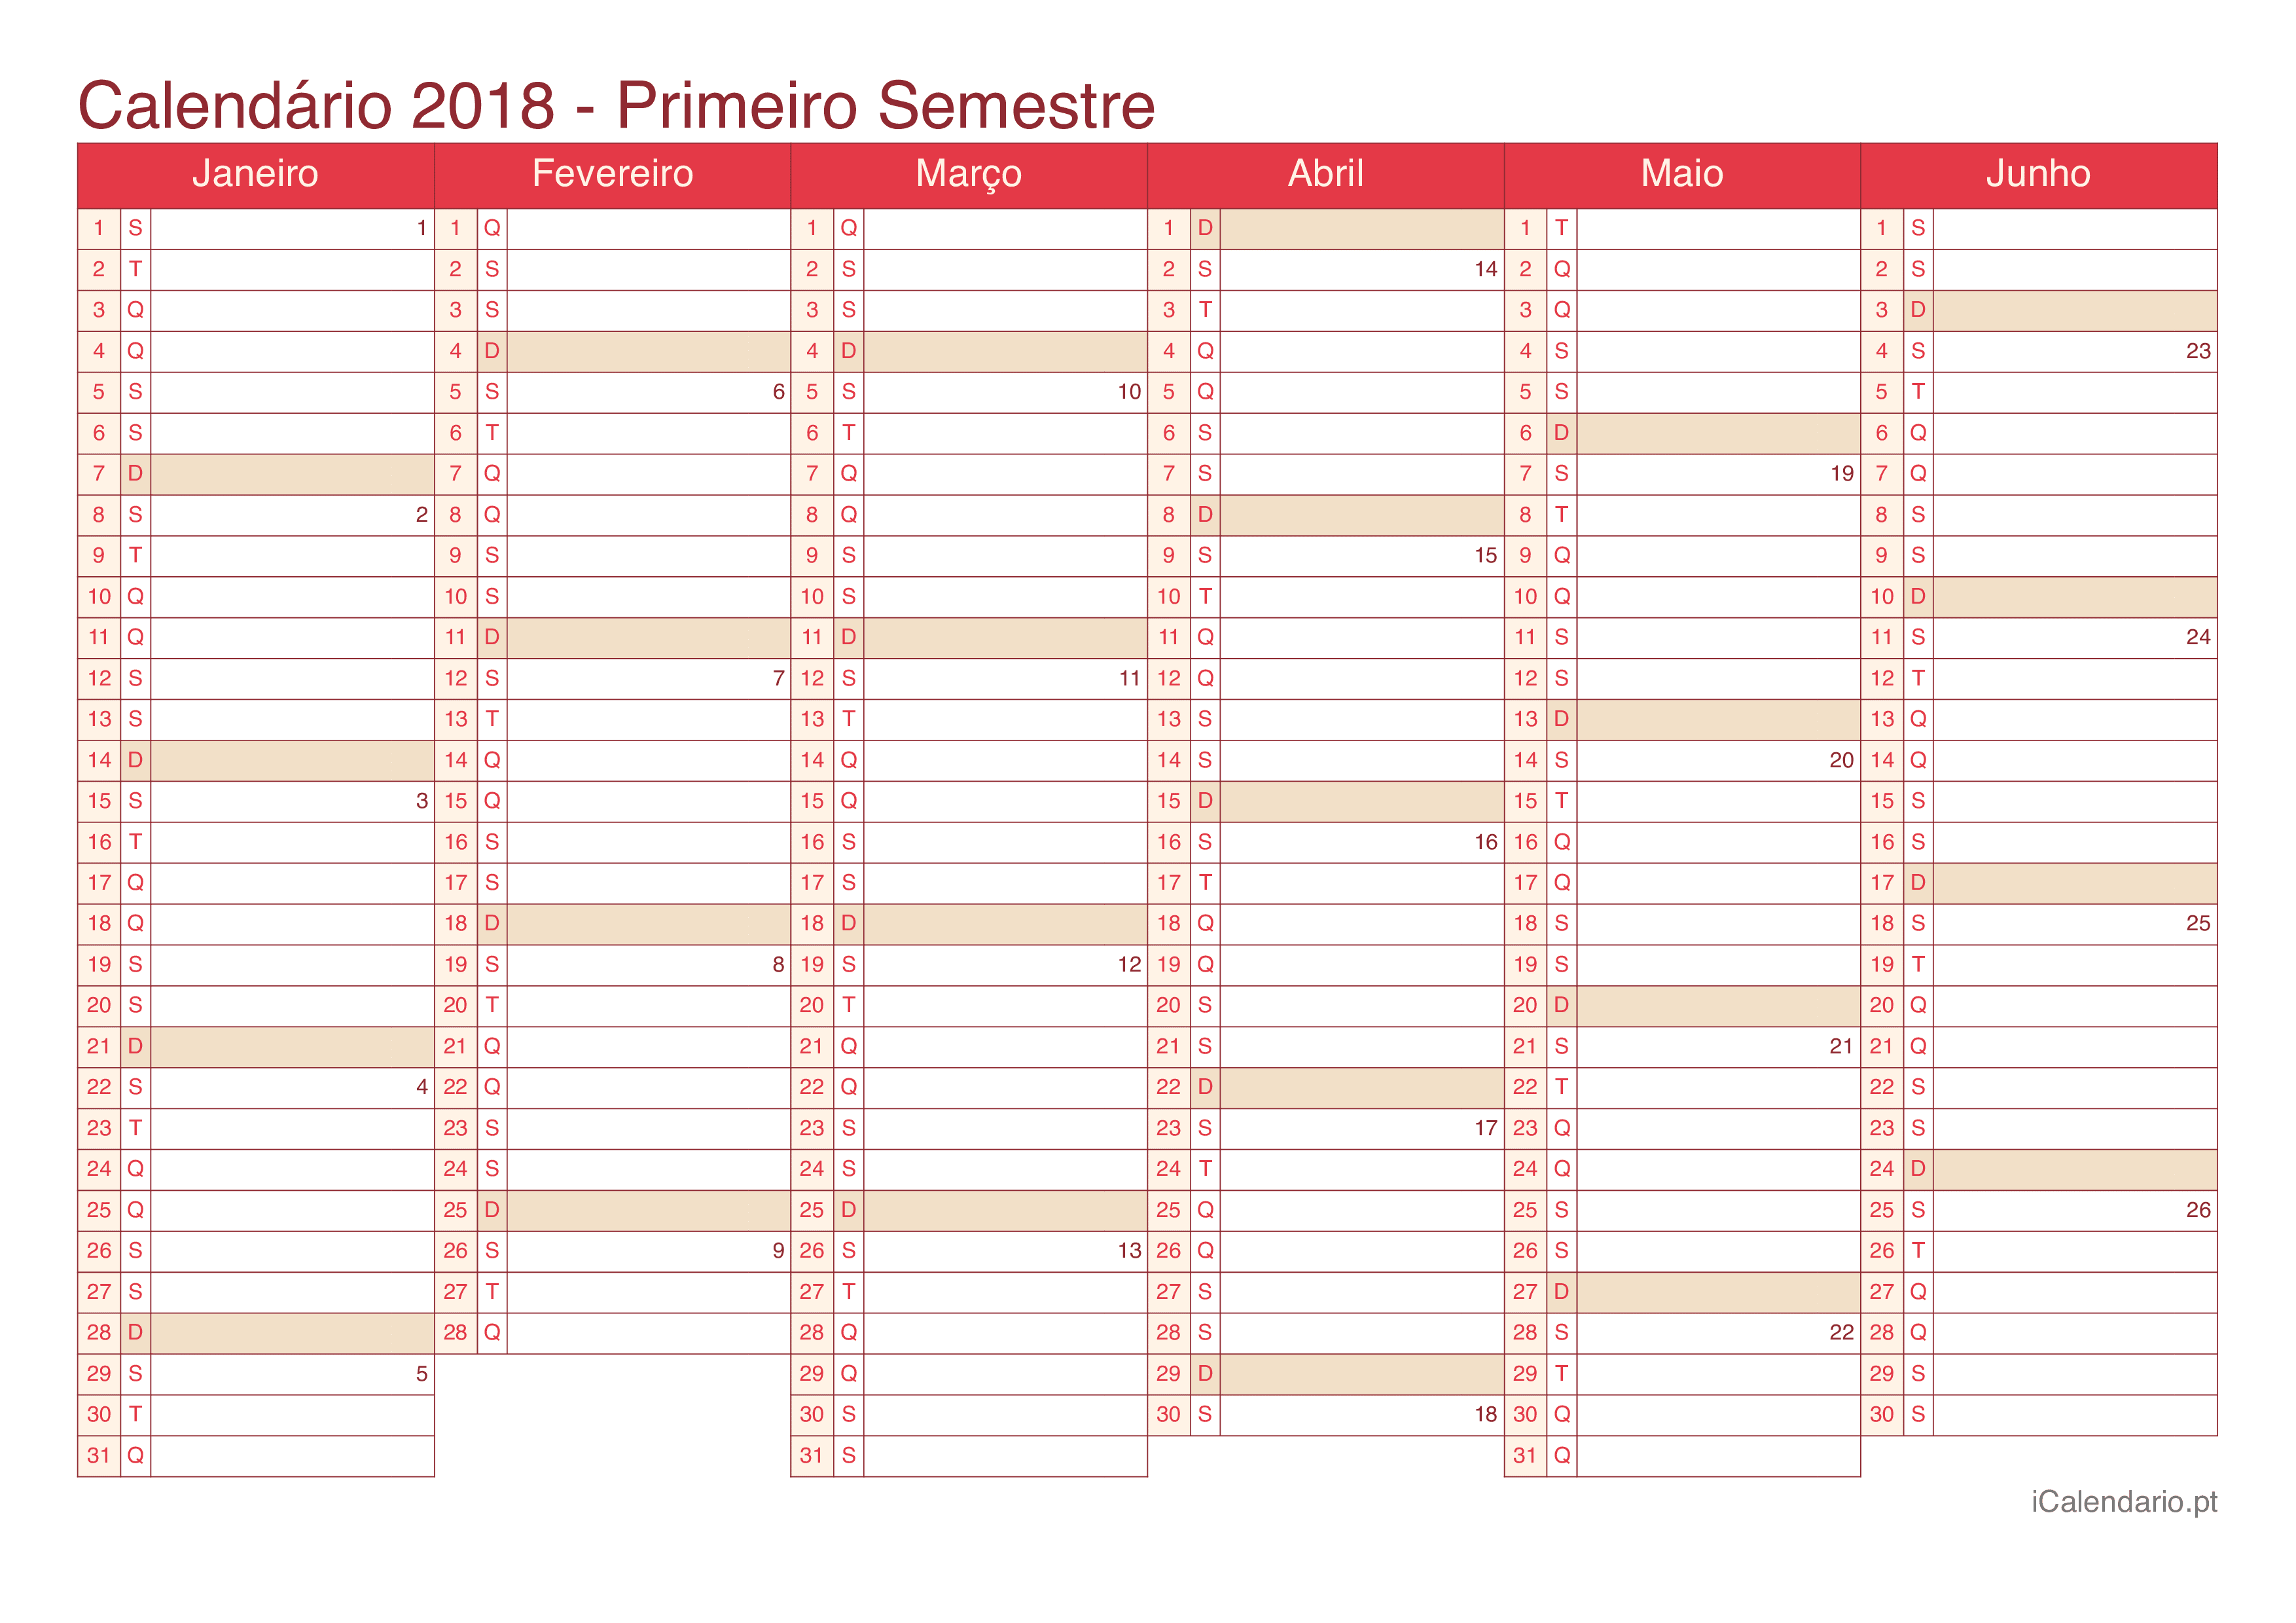 Calendário por semestre com números da semana 2018 - Cherry